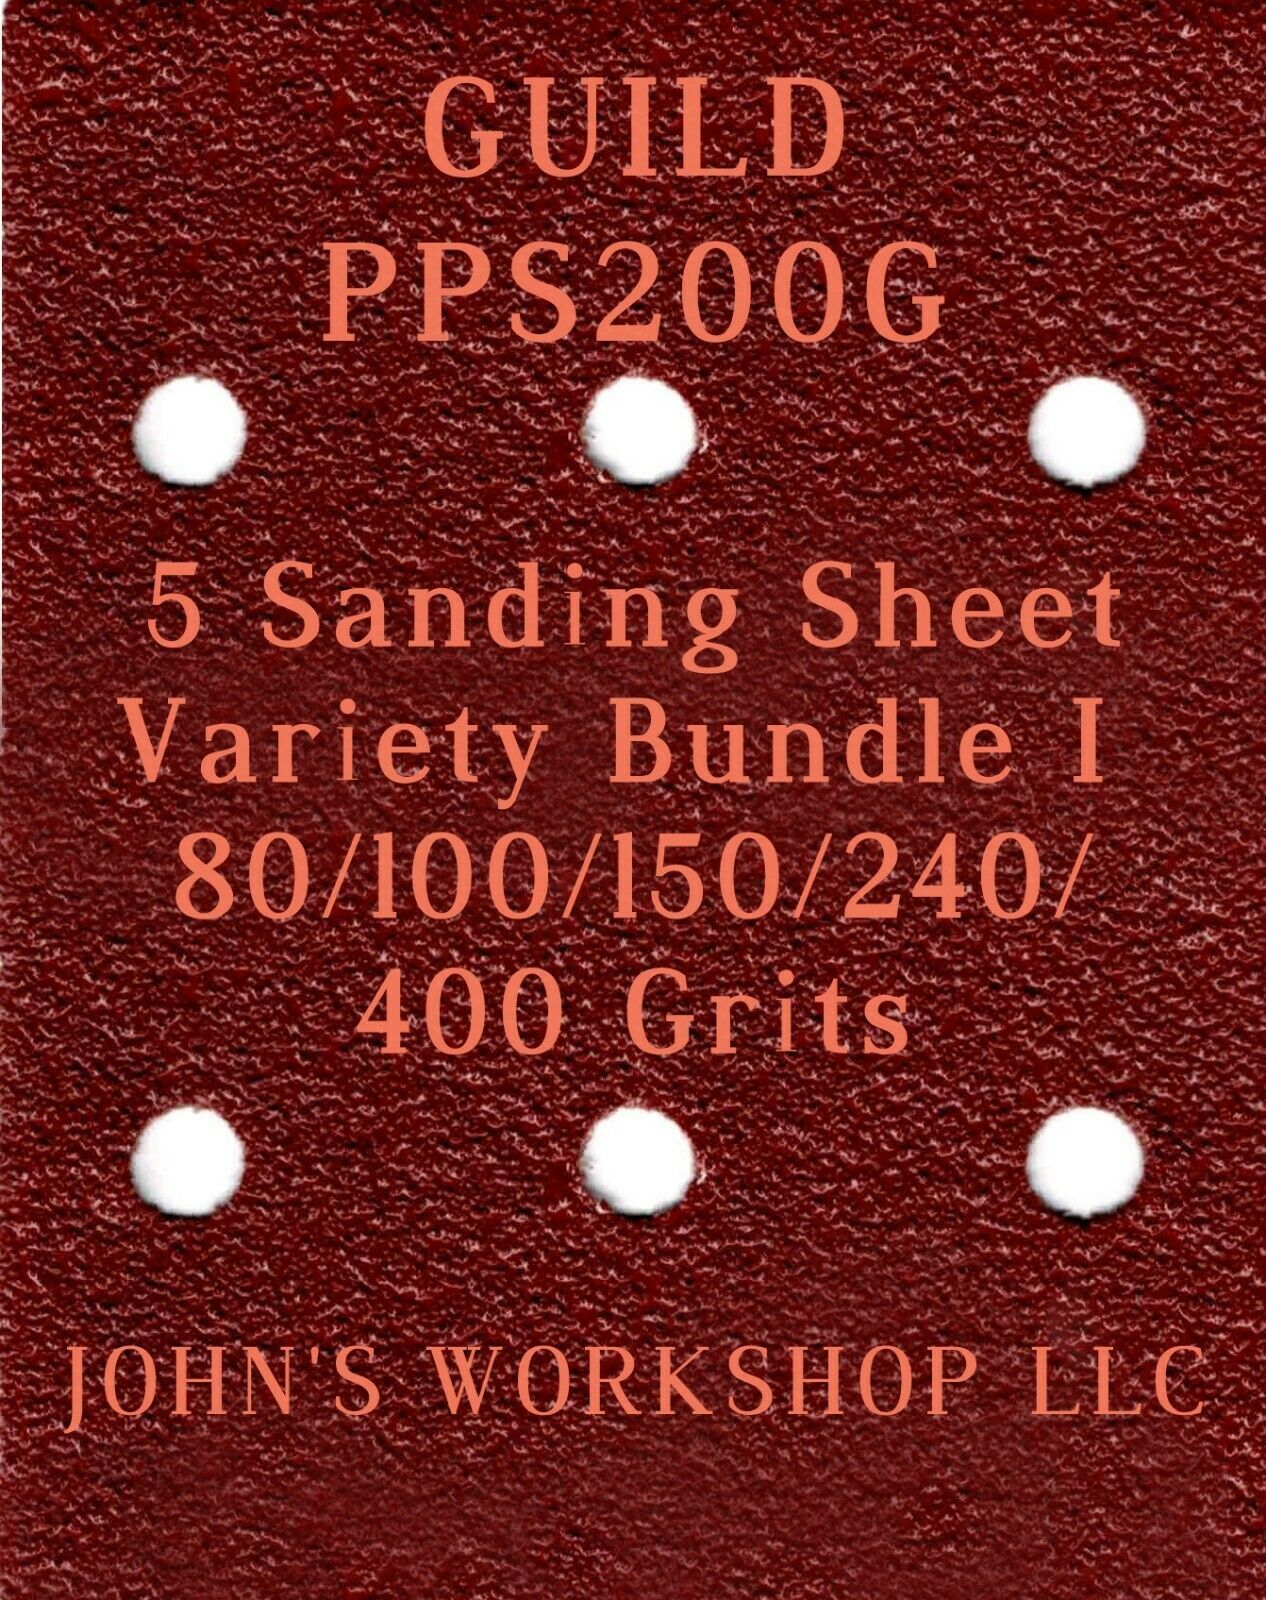 Primary image for GUILD PPS200G - 80/100/150/240/400 Grits - 5 Sandpaper Variety Bundle I